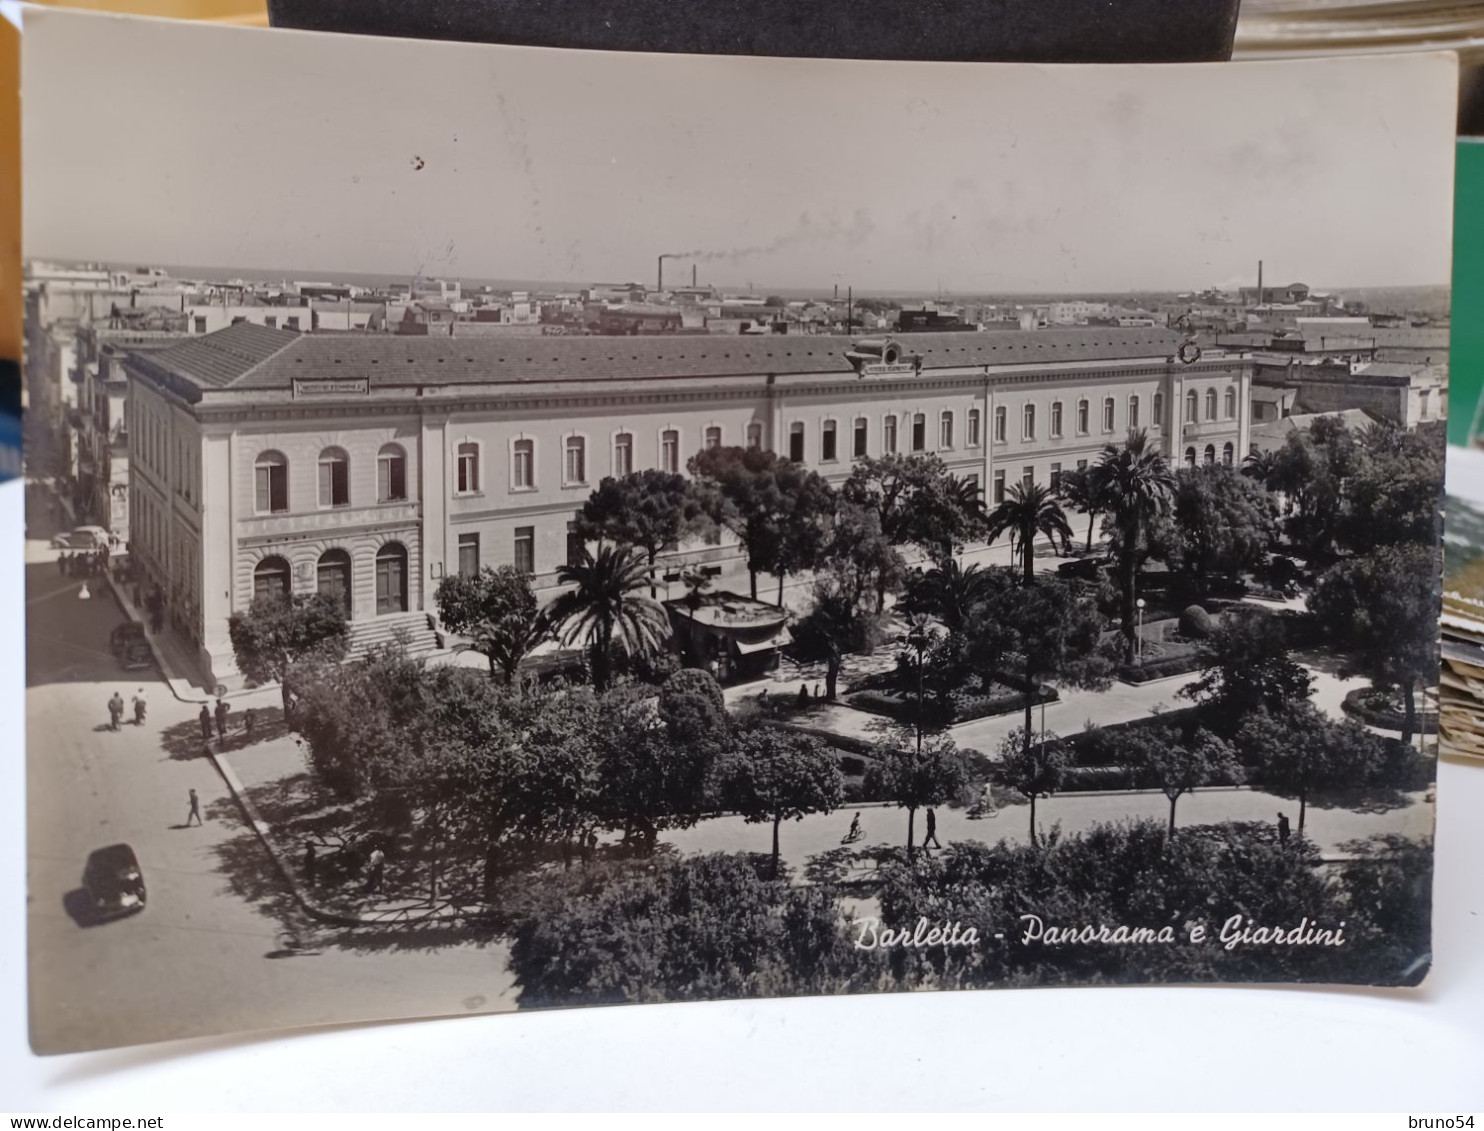 Cartolina Barletta Panorama E Giardini 1955 - Barletta